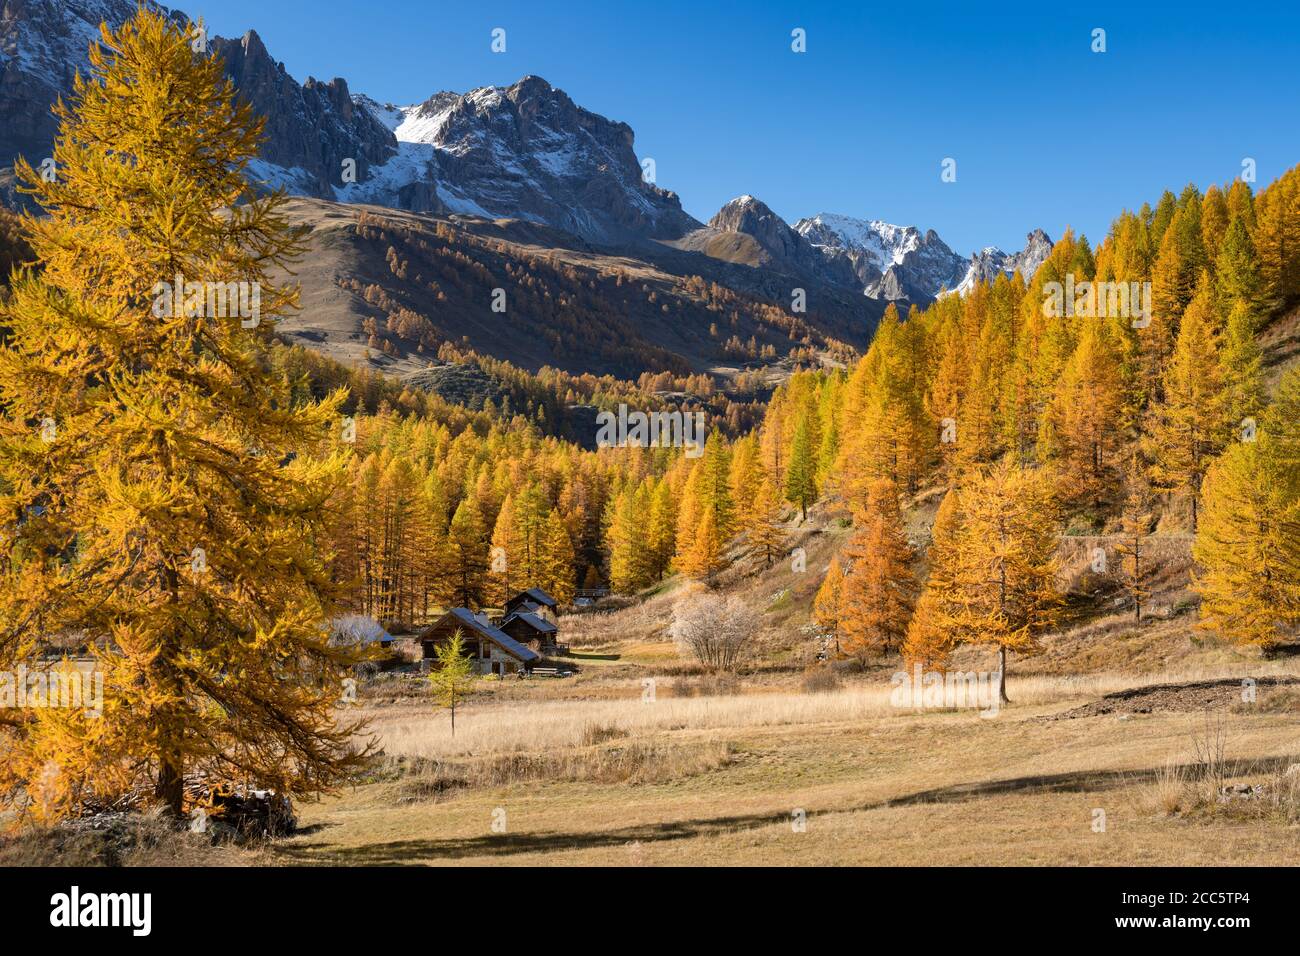 La vallée supérieure de la Claree avec des mélèzes aux couleurs automnales et le massif des Cerces au loin. Nevache, Hautes-Alpes (05), Alpes, France Banque D'Images